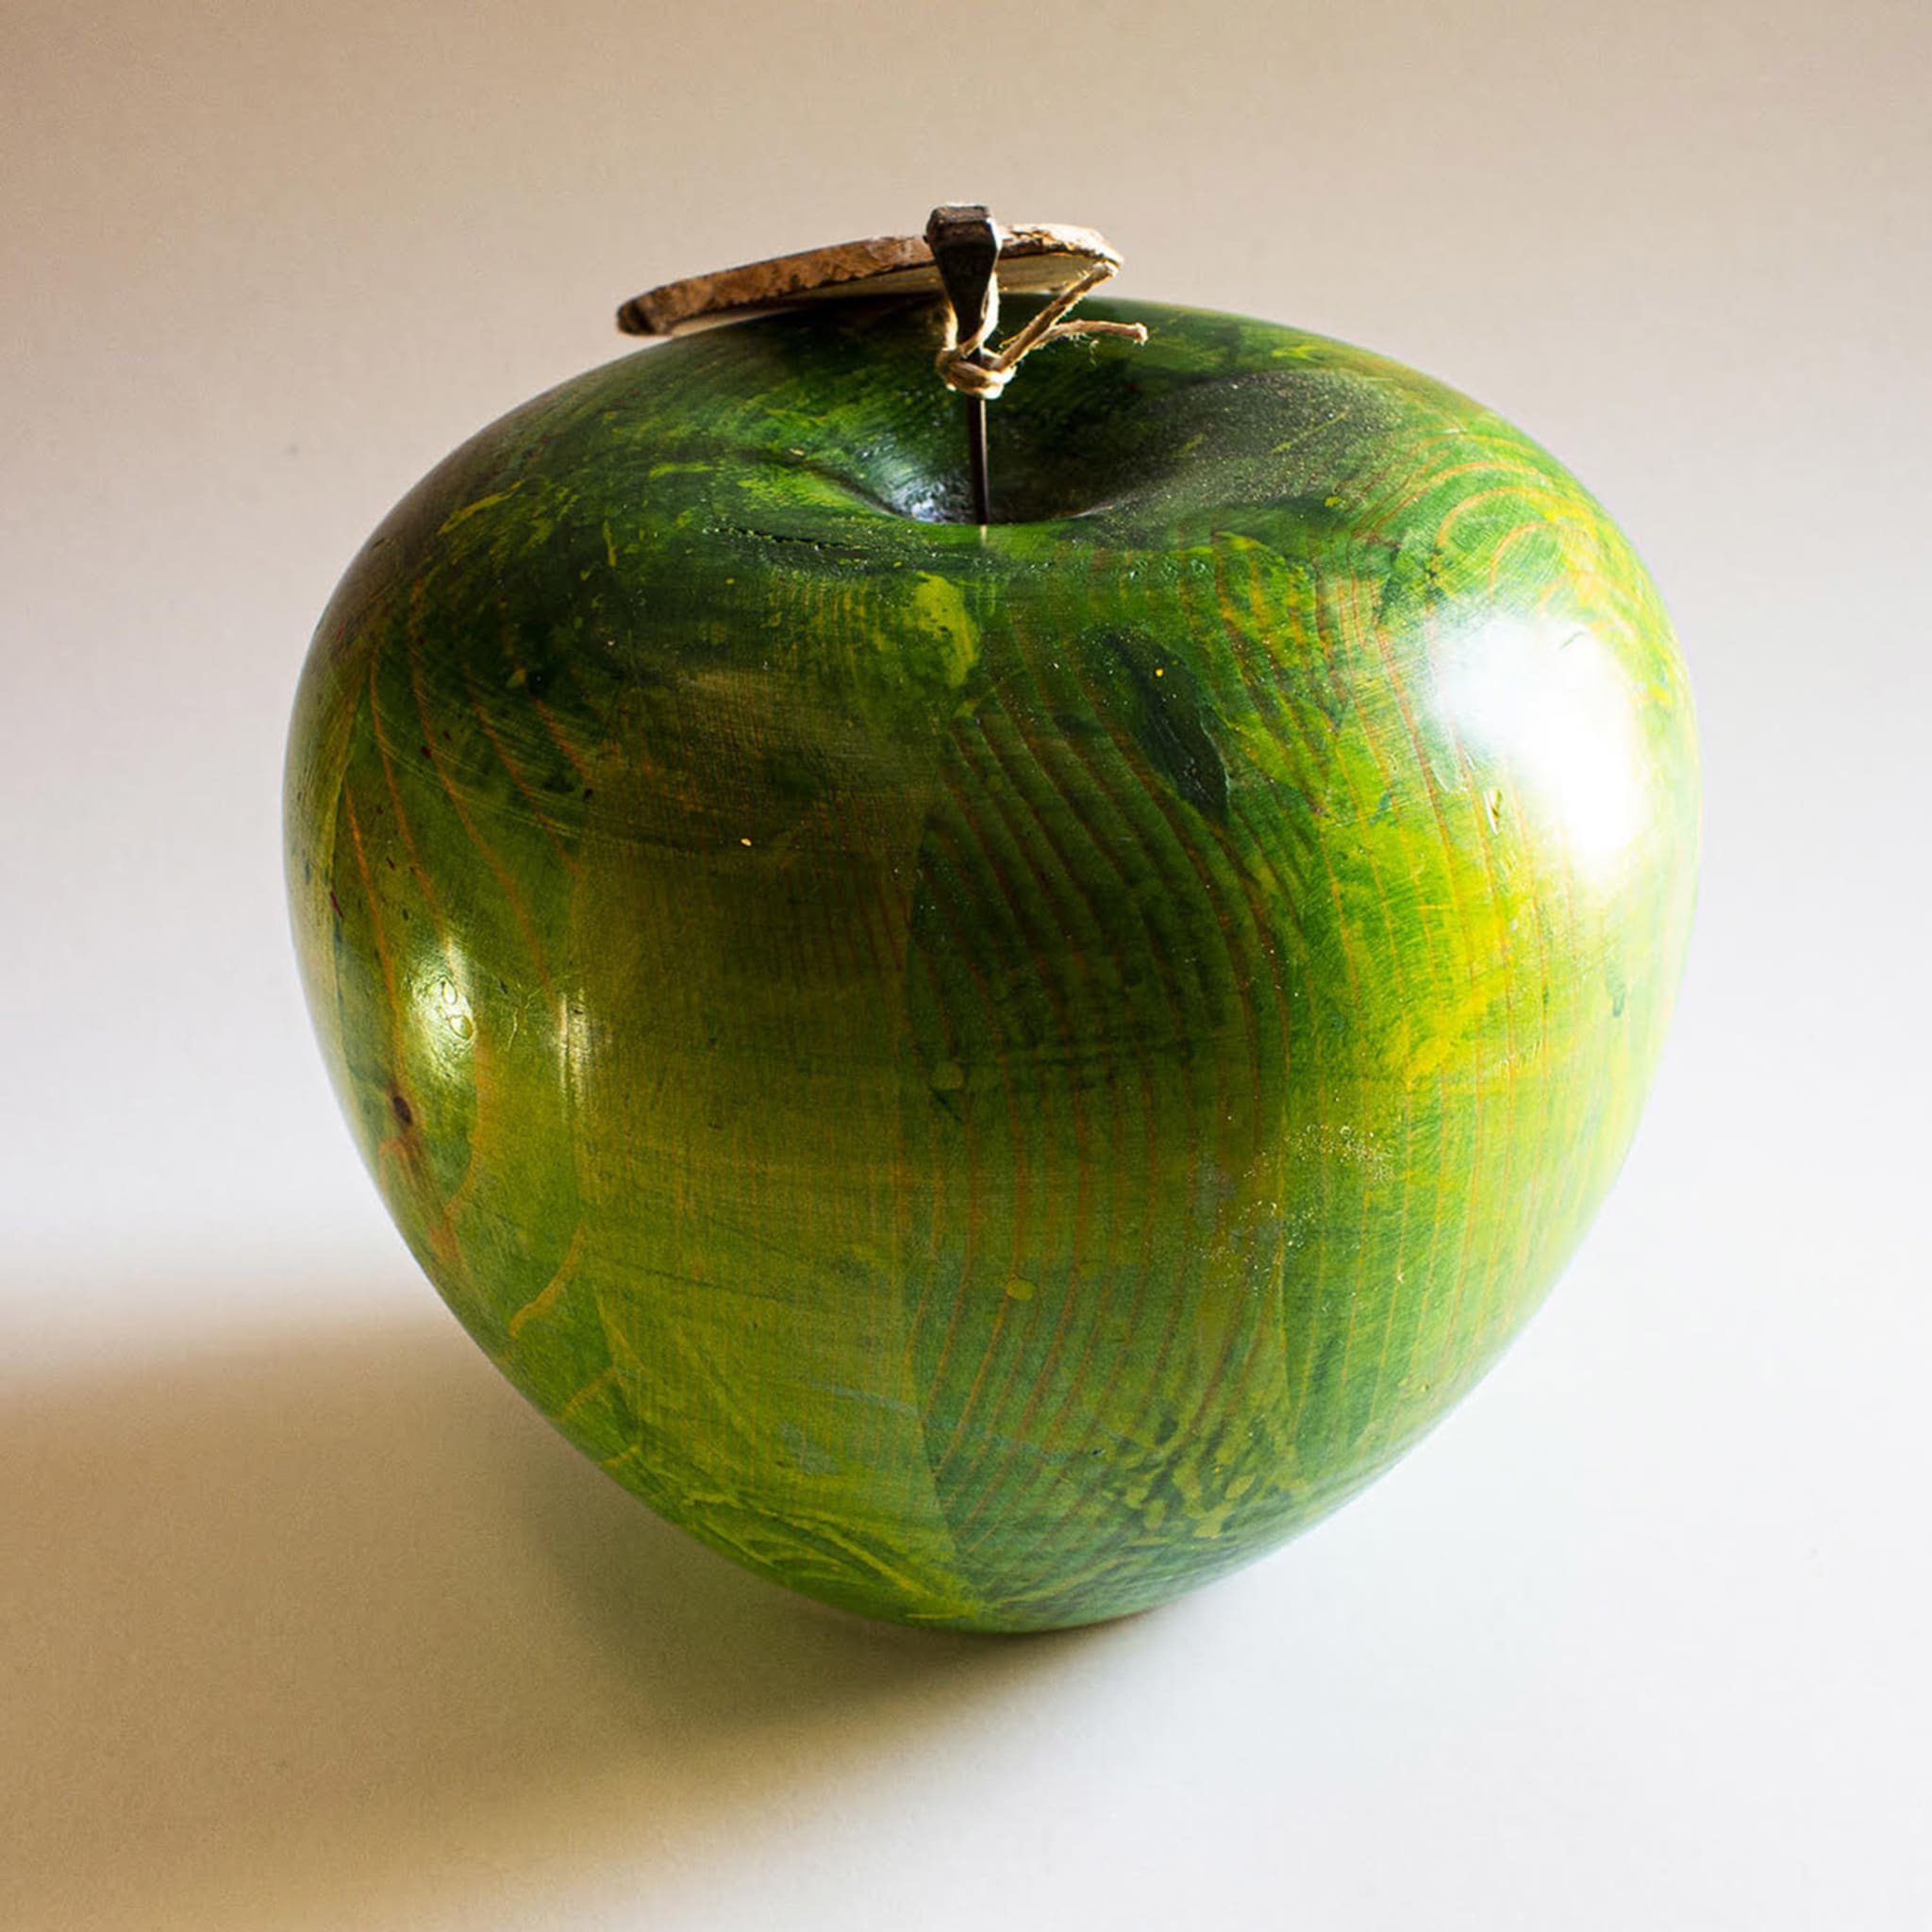 Green Fir Apple - Alternative view 1